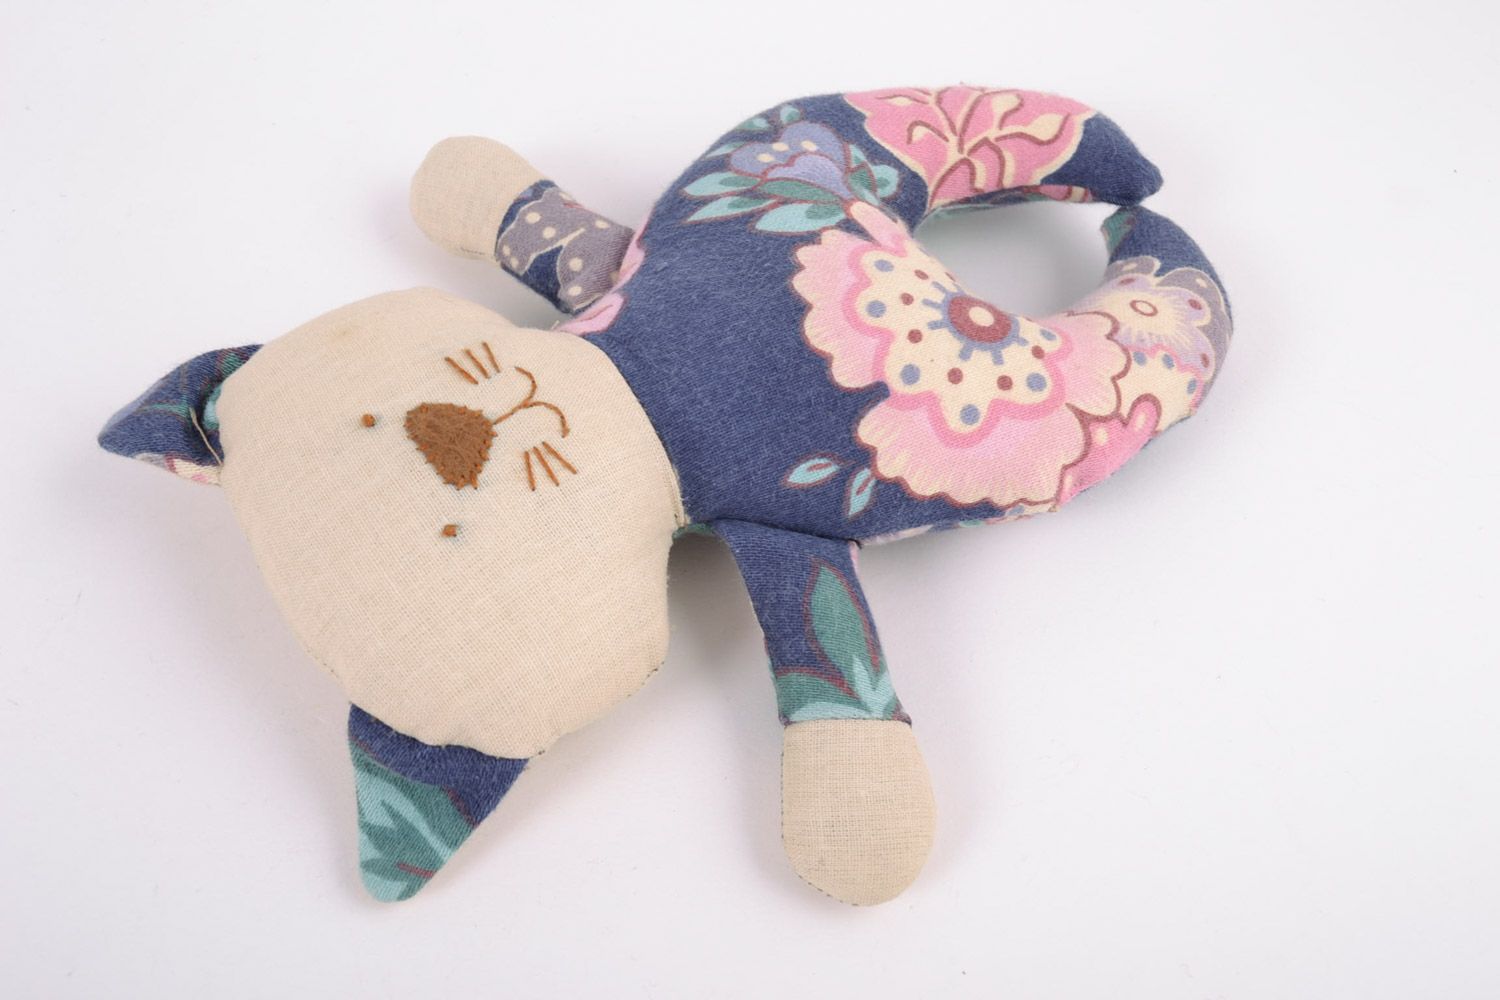 Textil Kuscheltier Kater blumig aus Baumwolle schön handmade Spielzeug für Kinder foto 2